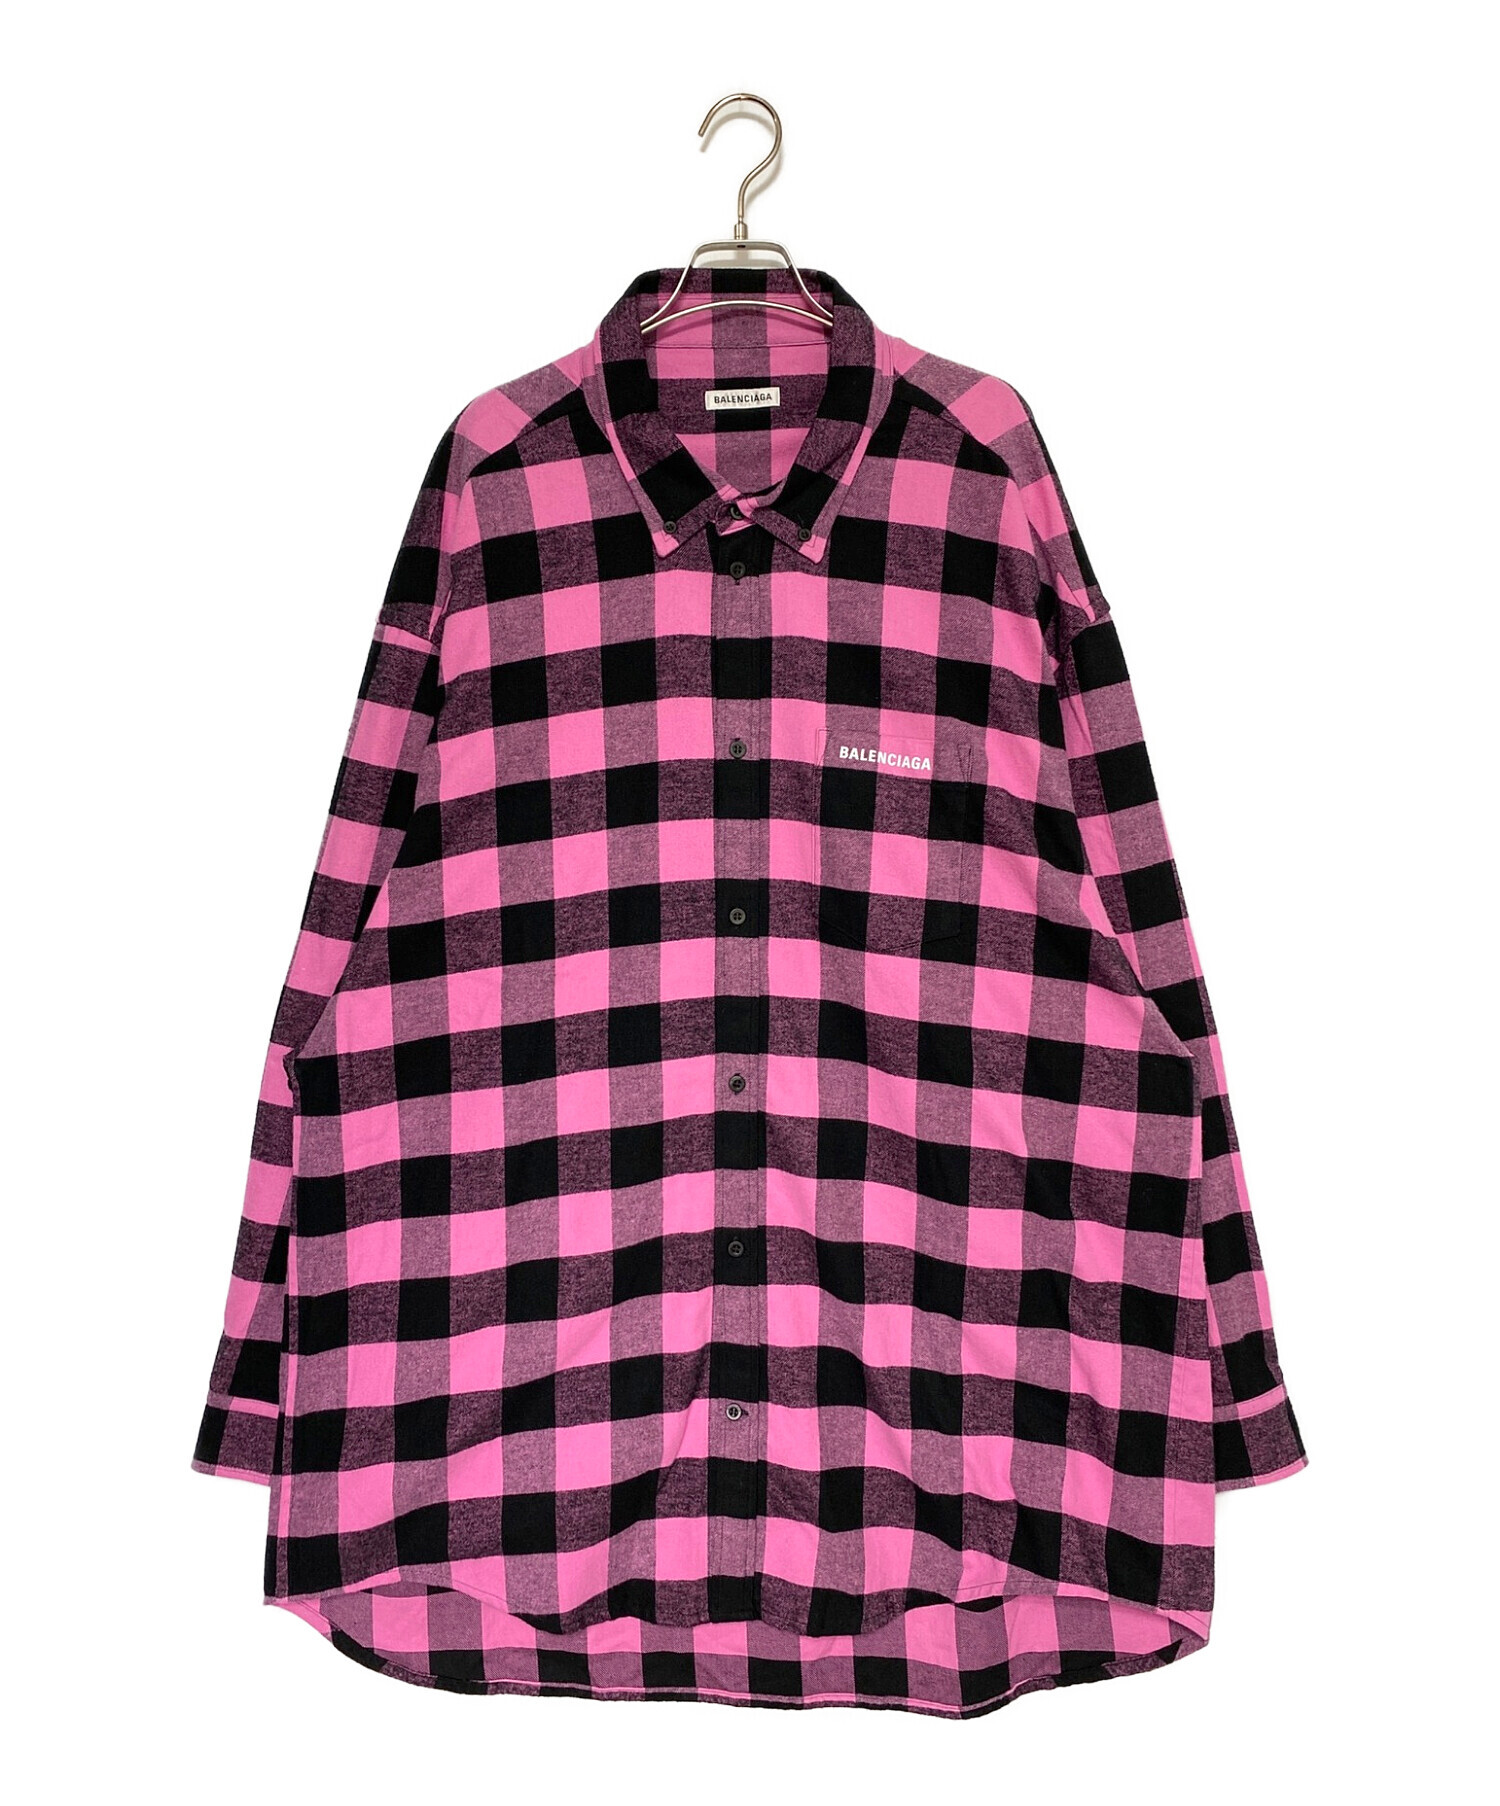 BALENCIAGA (バレンシアガ) オーバーサイズチェックネルシャツ ピンク×ブラック サイズ:34